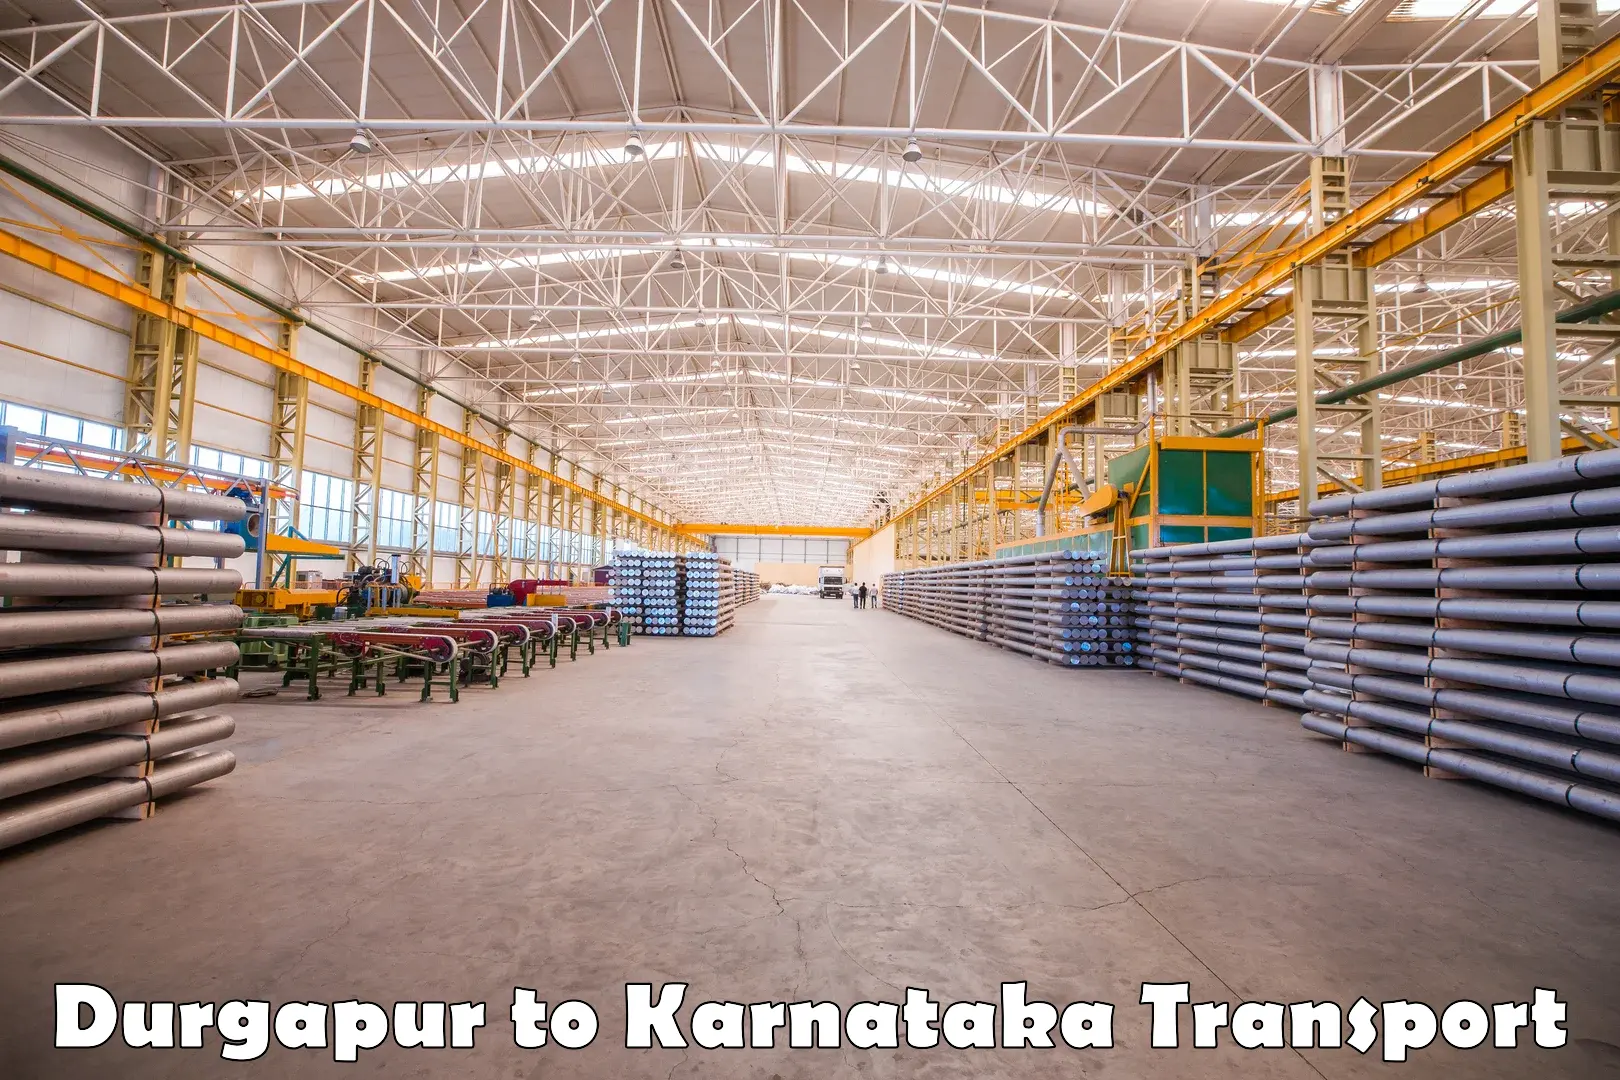 Truck transport companies in India Durgapur to Shorapur